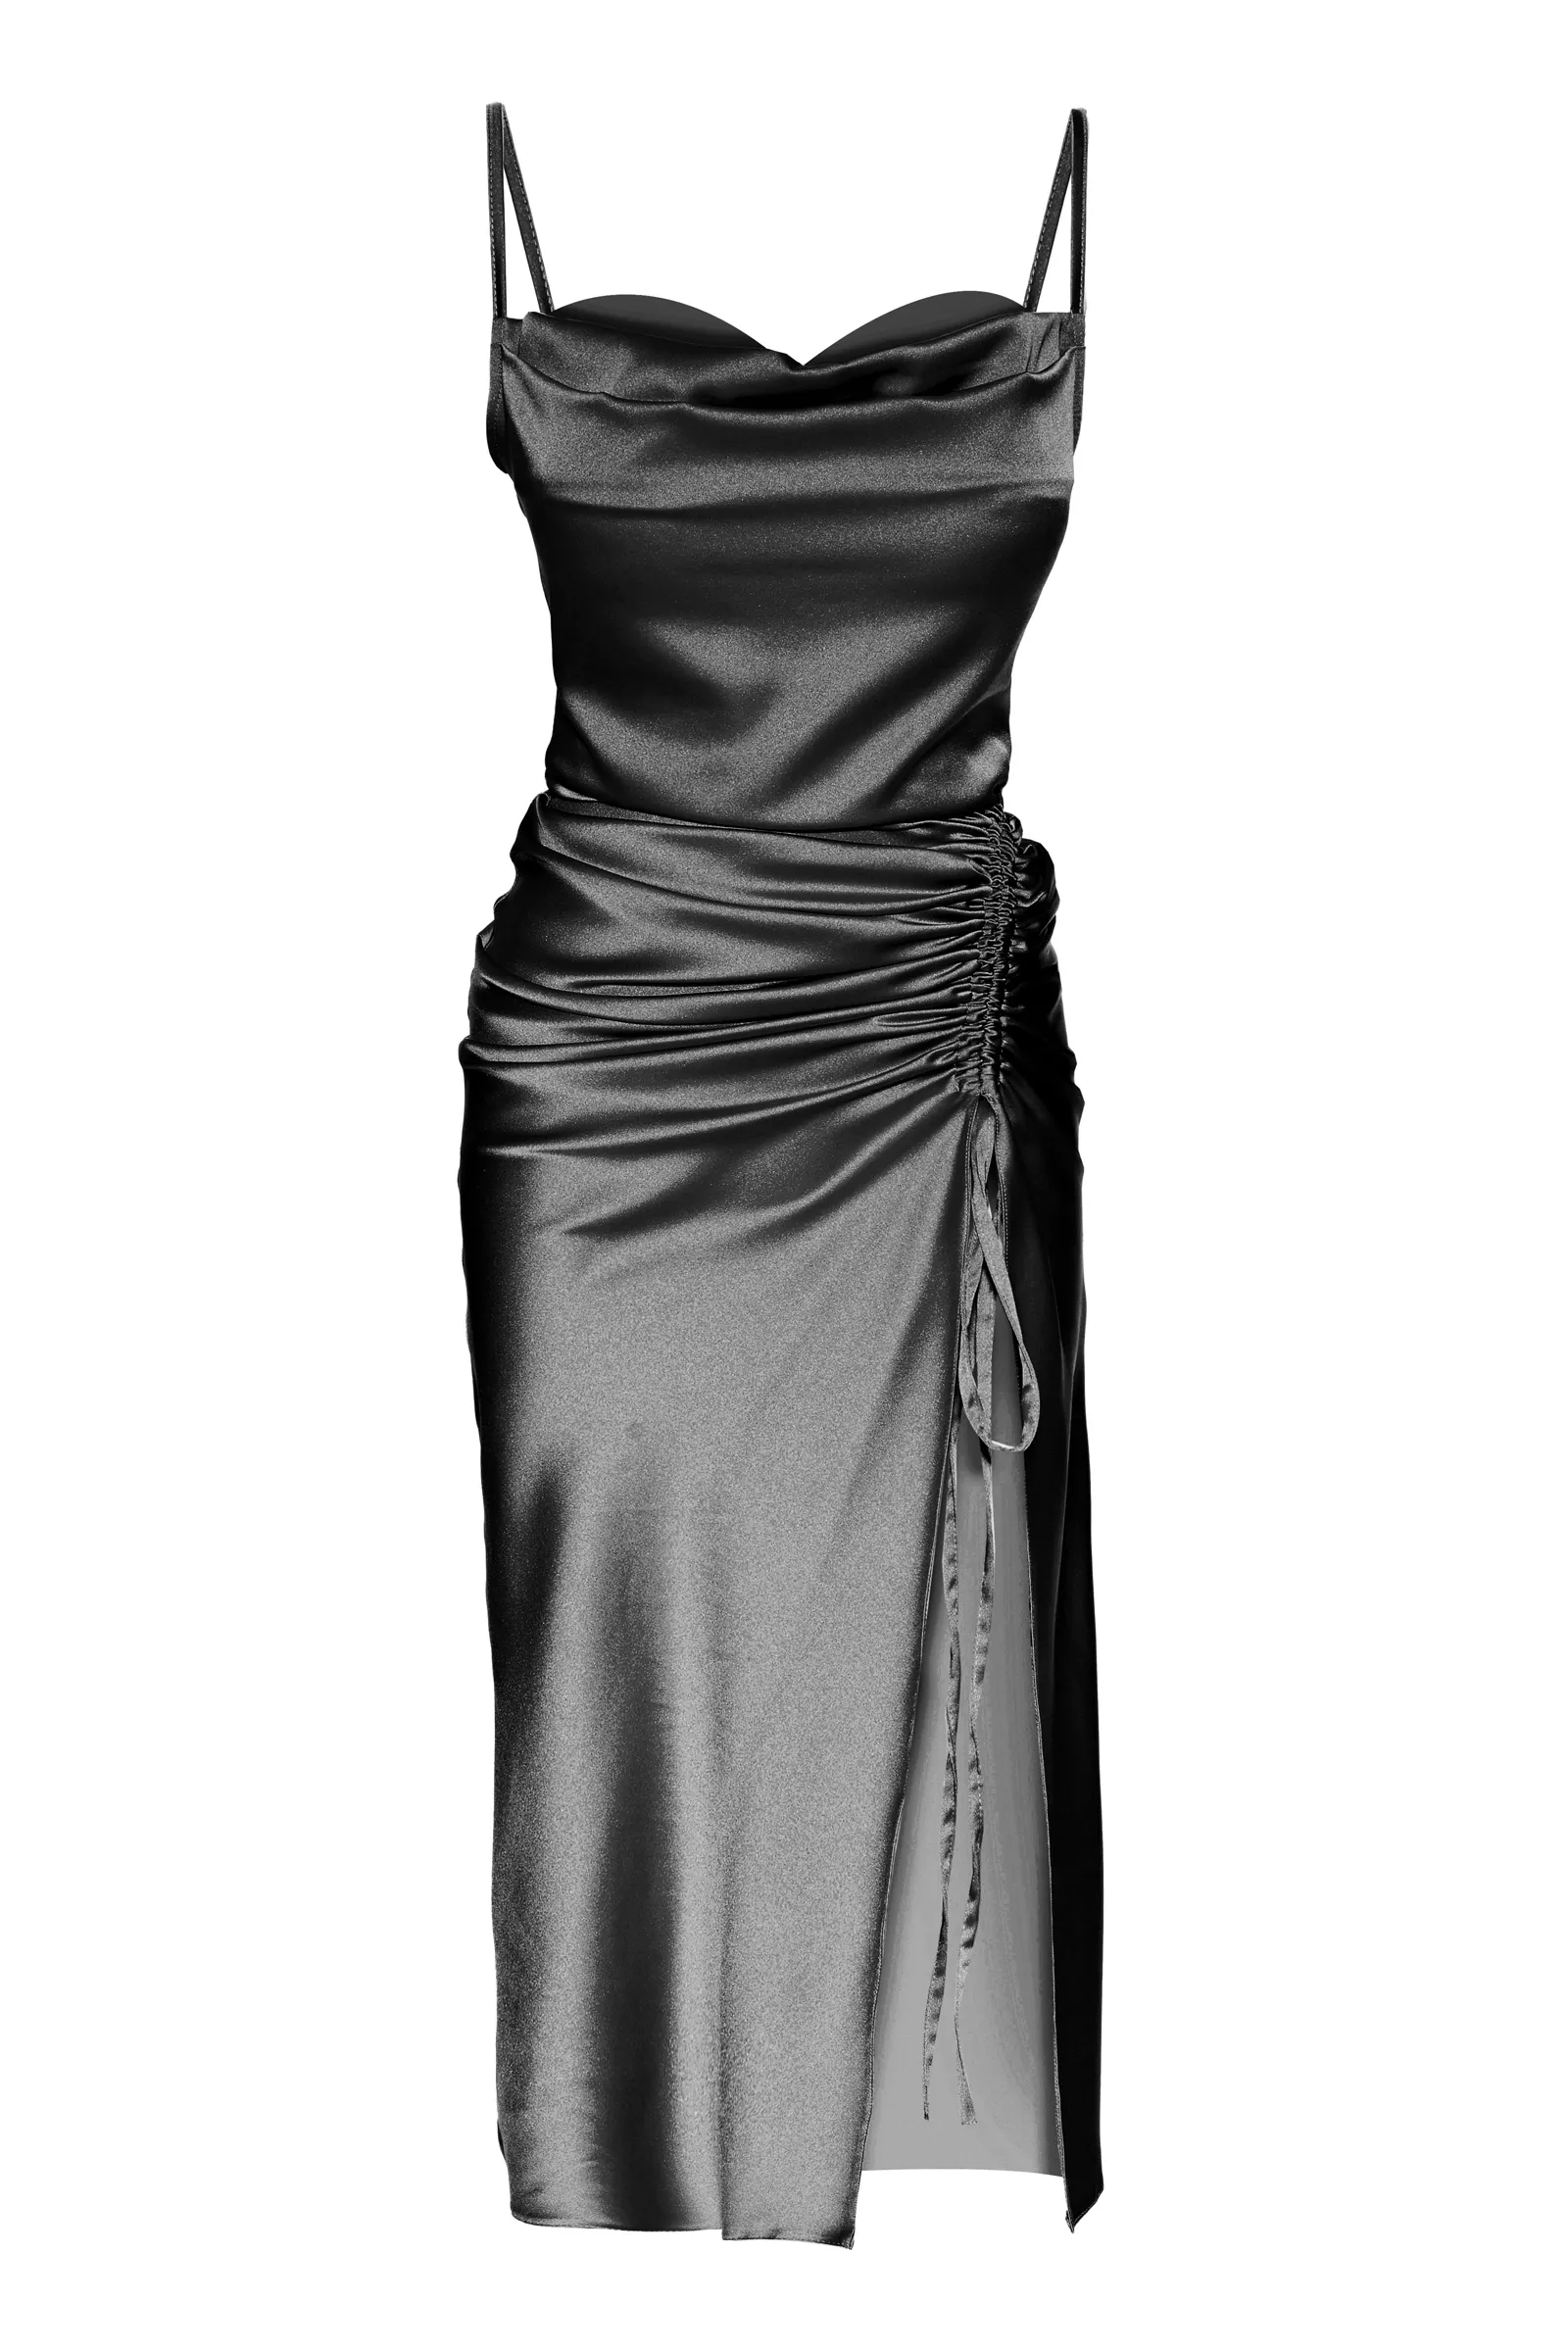 Black satin sleeveless maxi dress